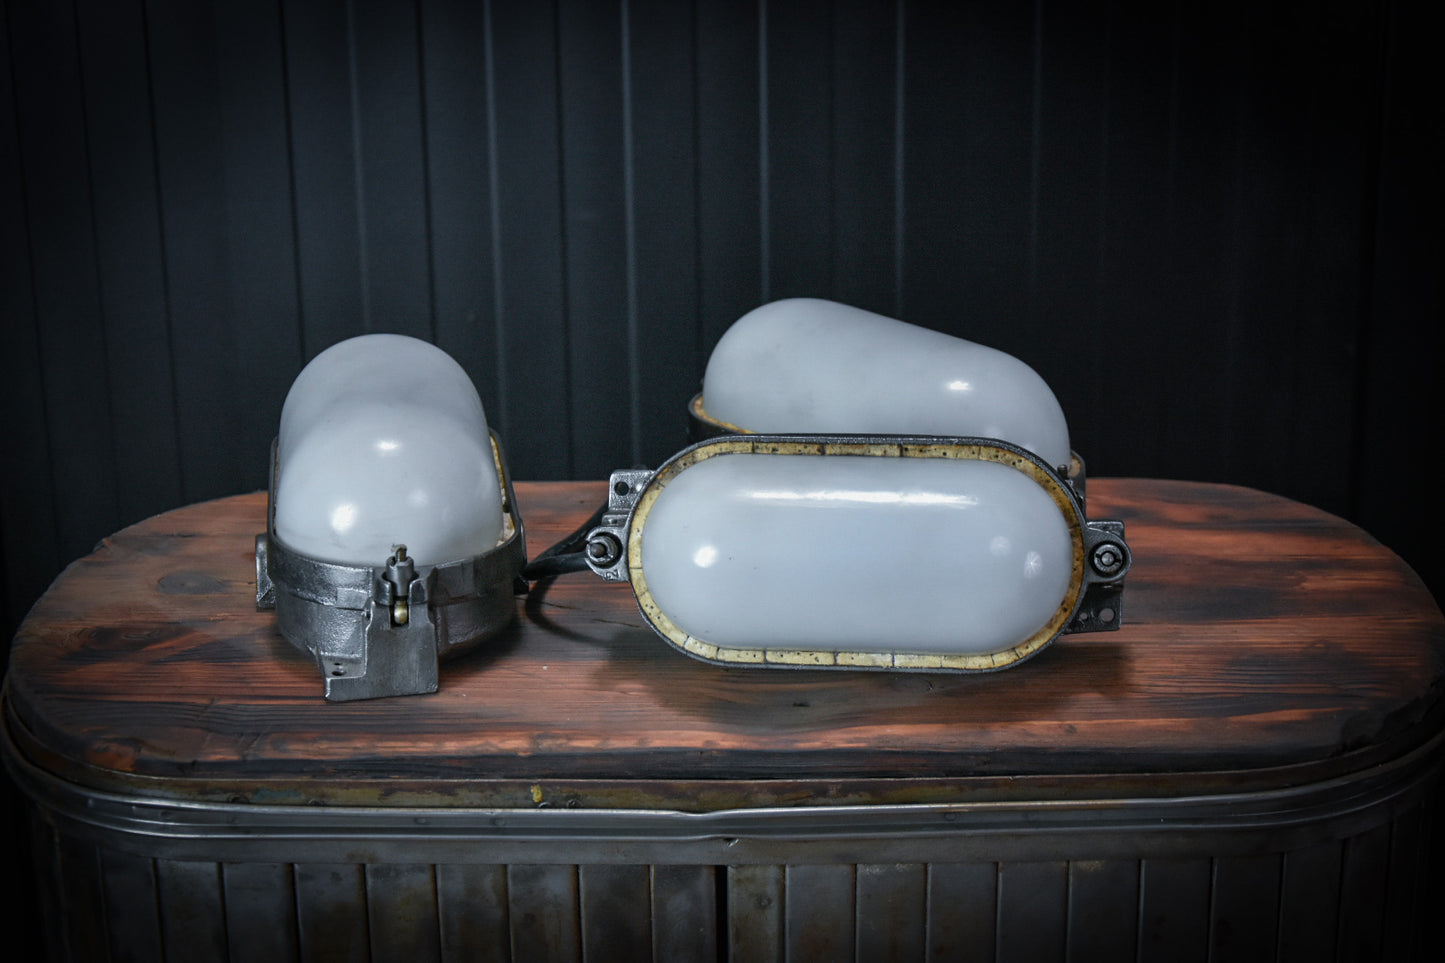 pre-war Industrial explosion proof BUNKER lamps